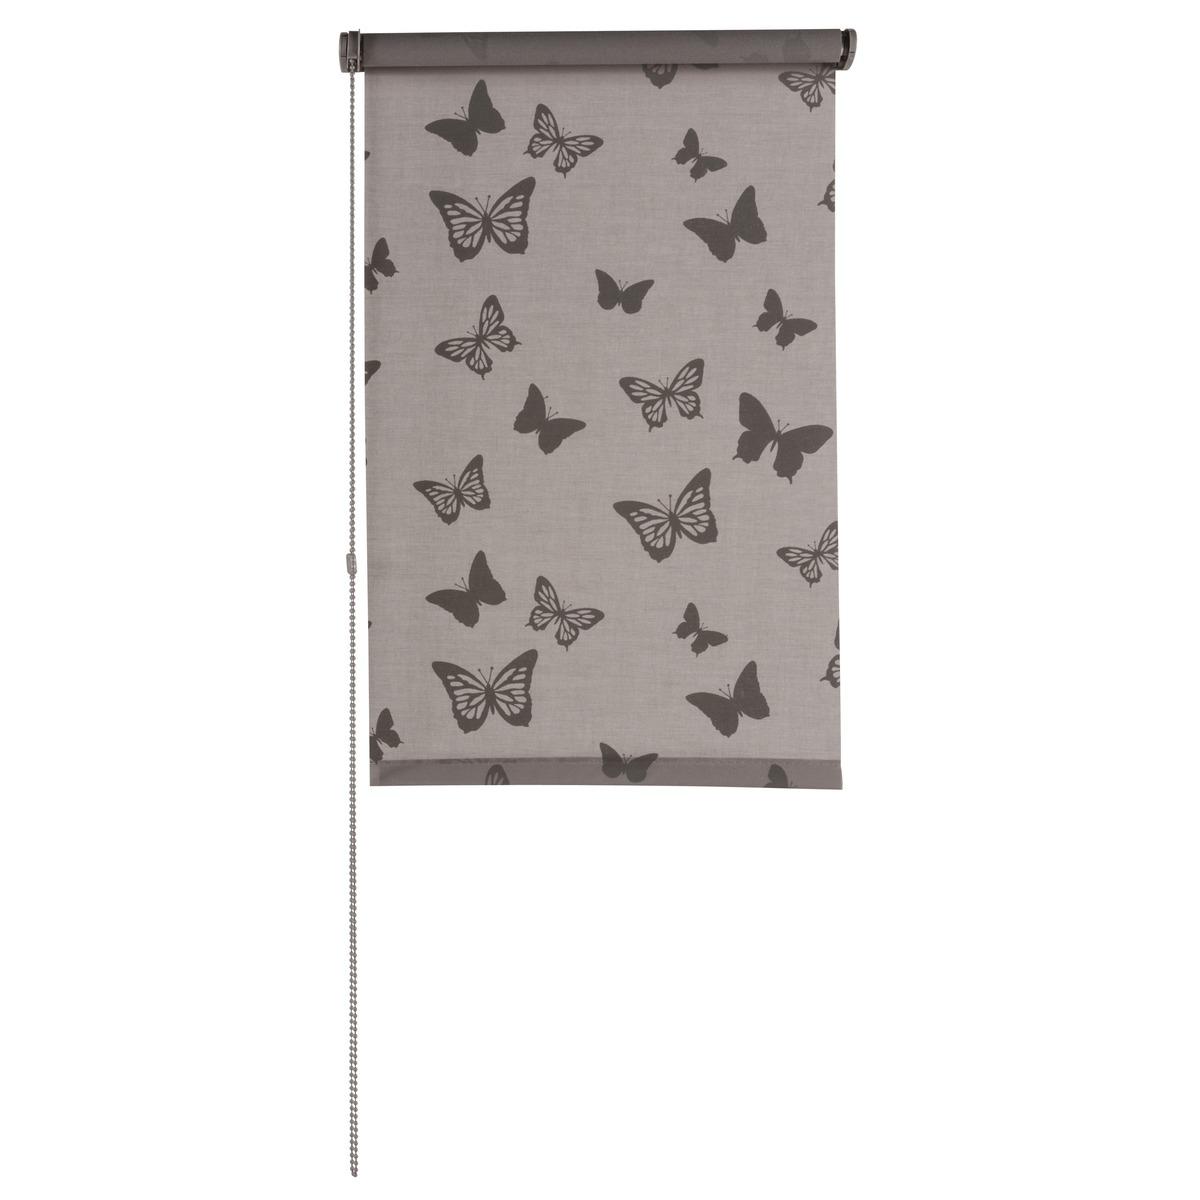 Store enrouleur tamisant imprimé papillon - 60 x 180 cm - Marron taupe